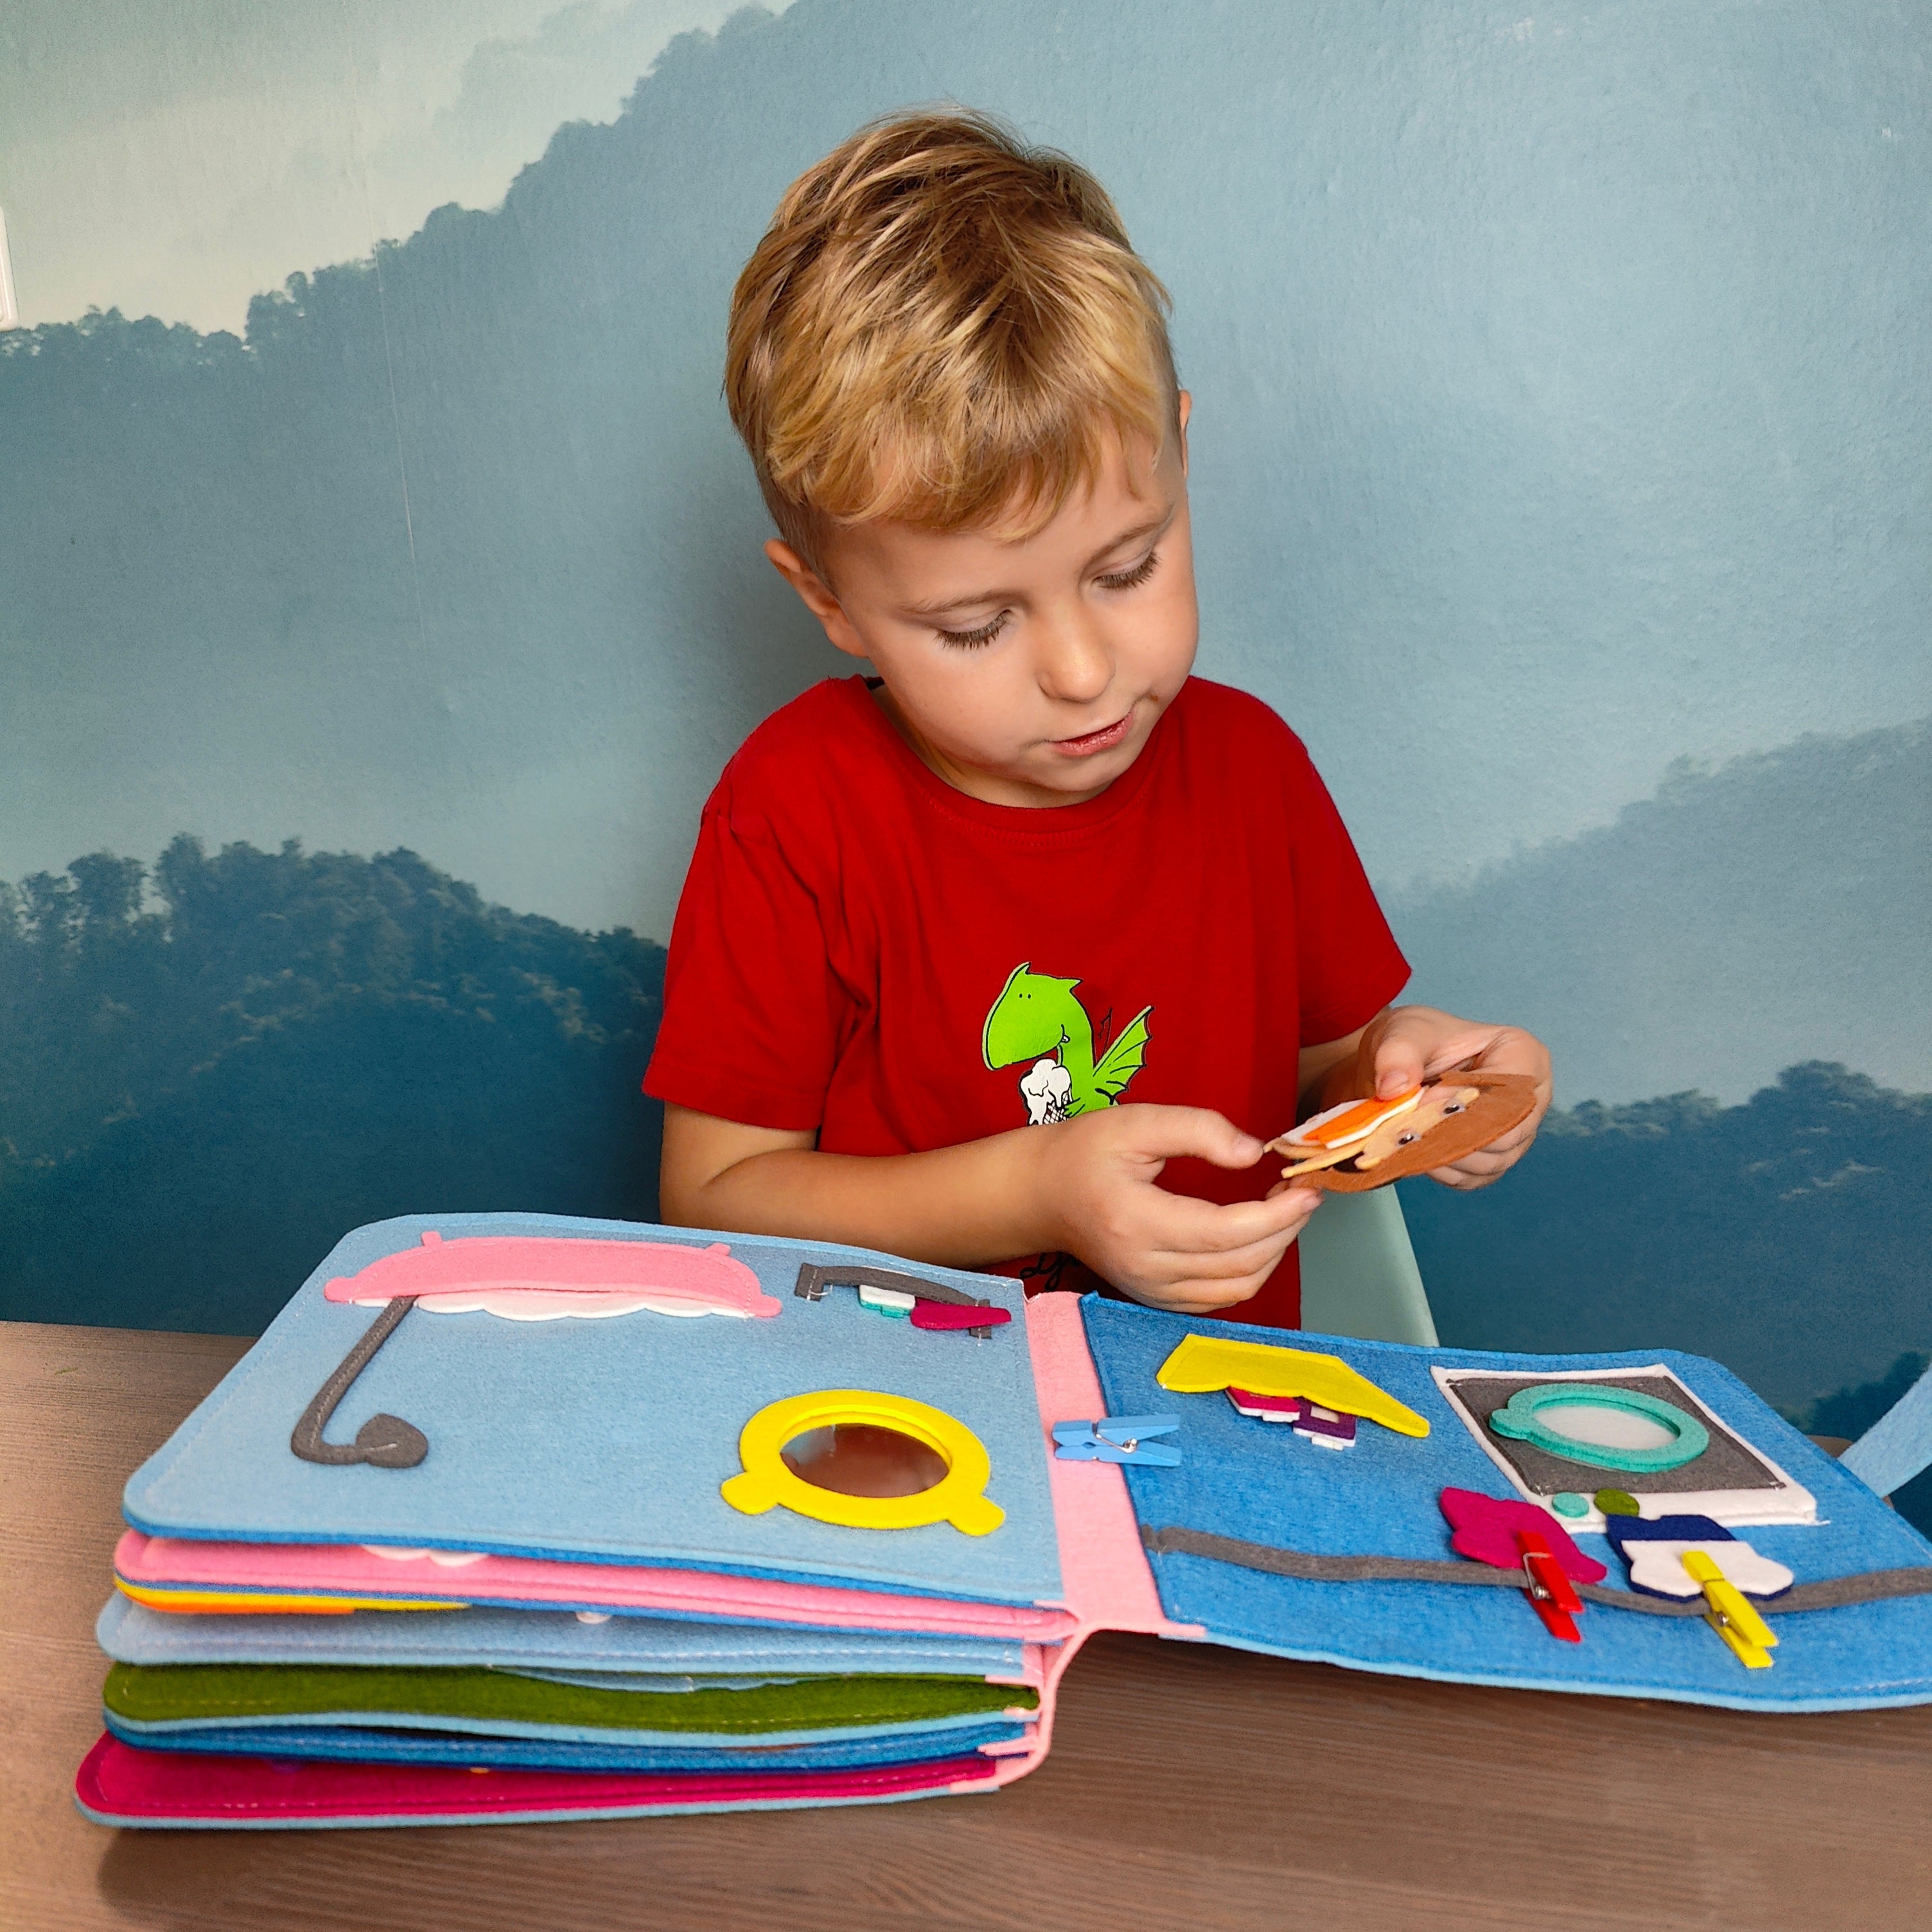 Montessori-verhalenboek van KiddoSpace